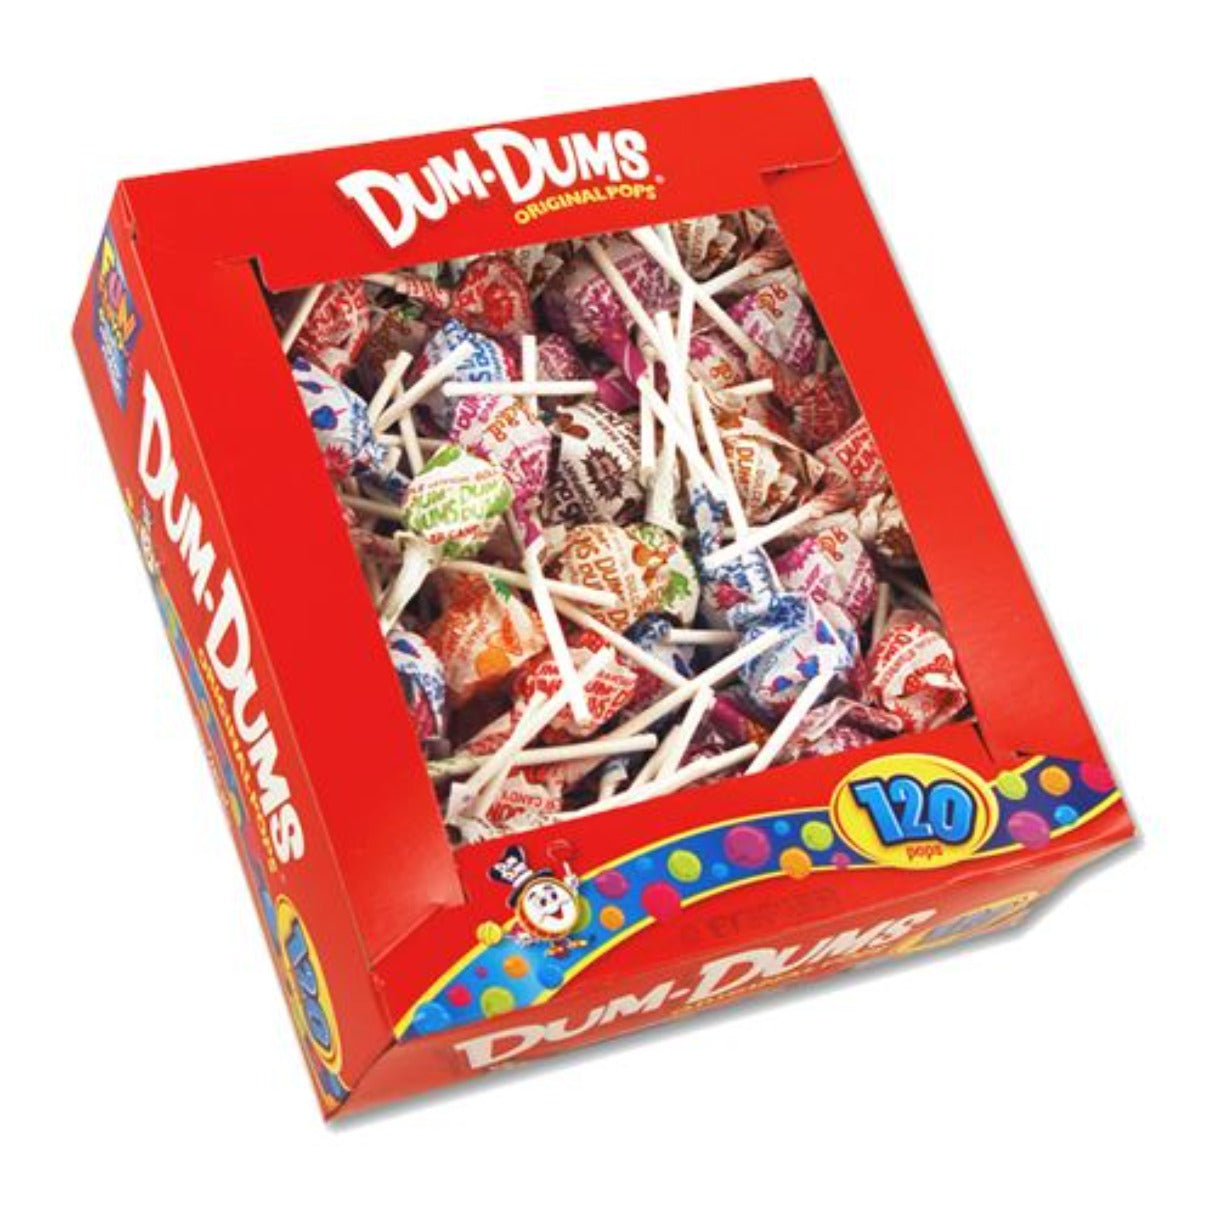 Spangler Dum Dum Lollipops - 120ct